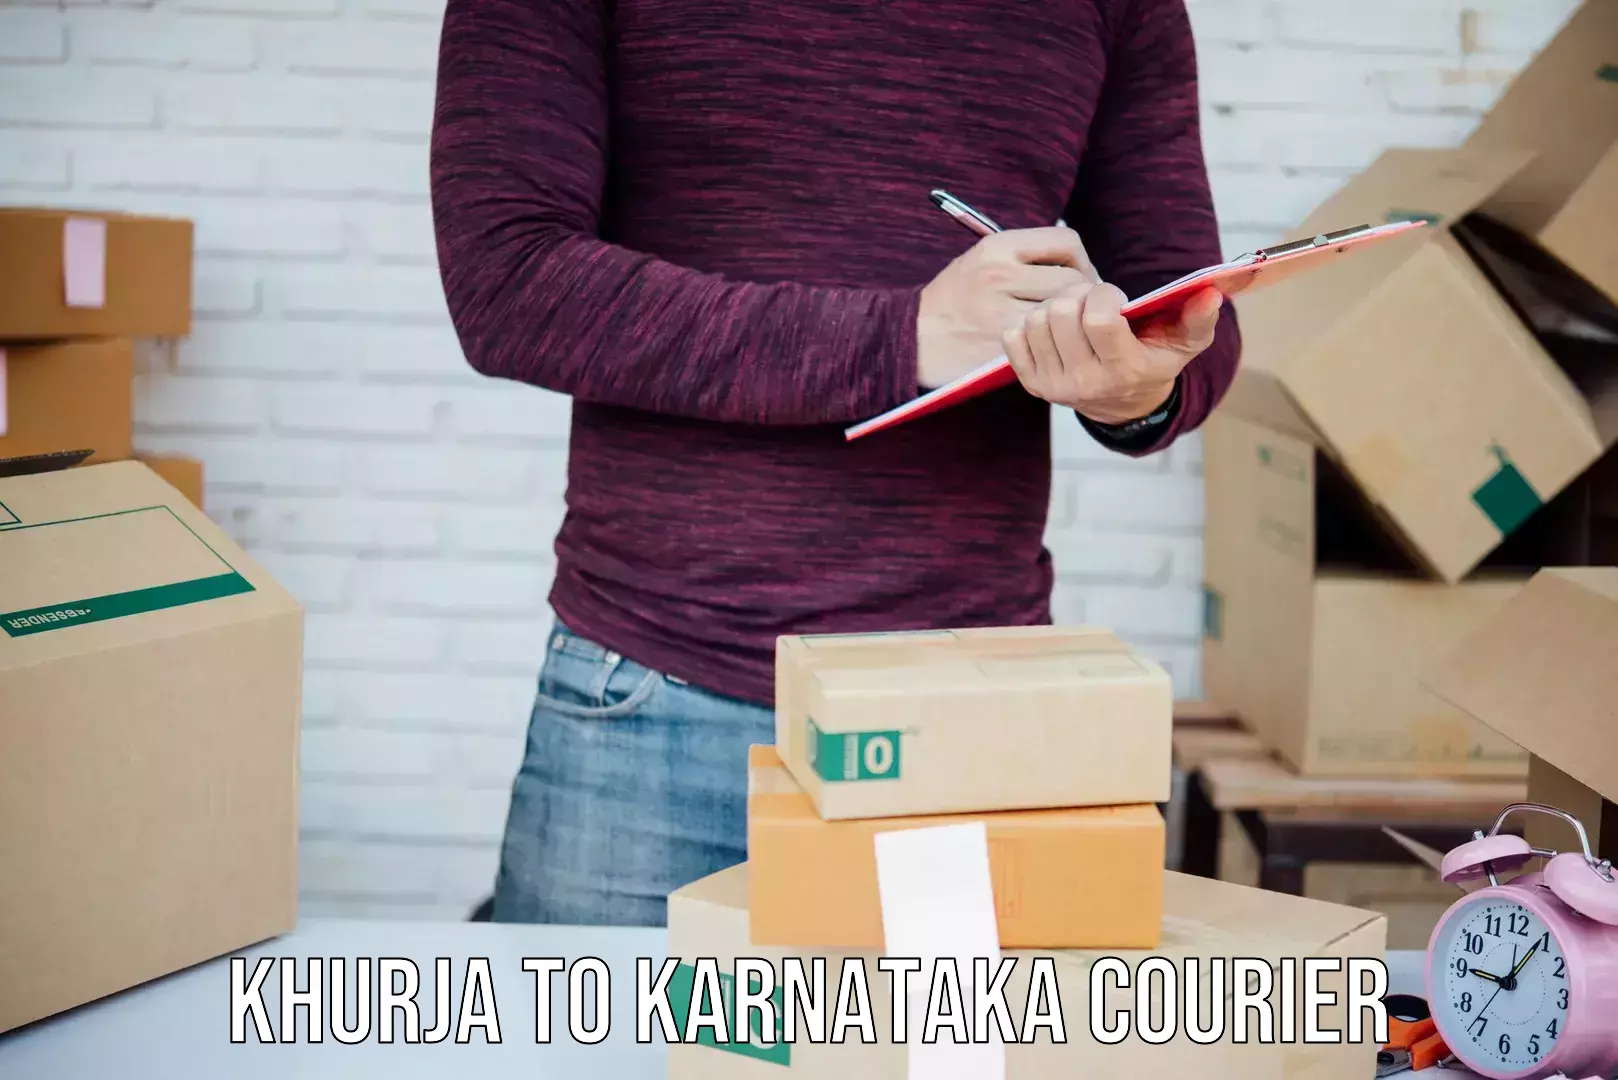 Speedy delivery service Khurja to Karnataka